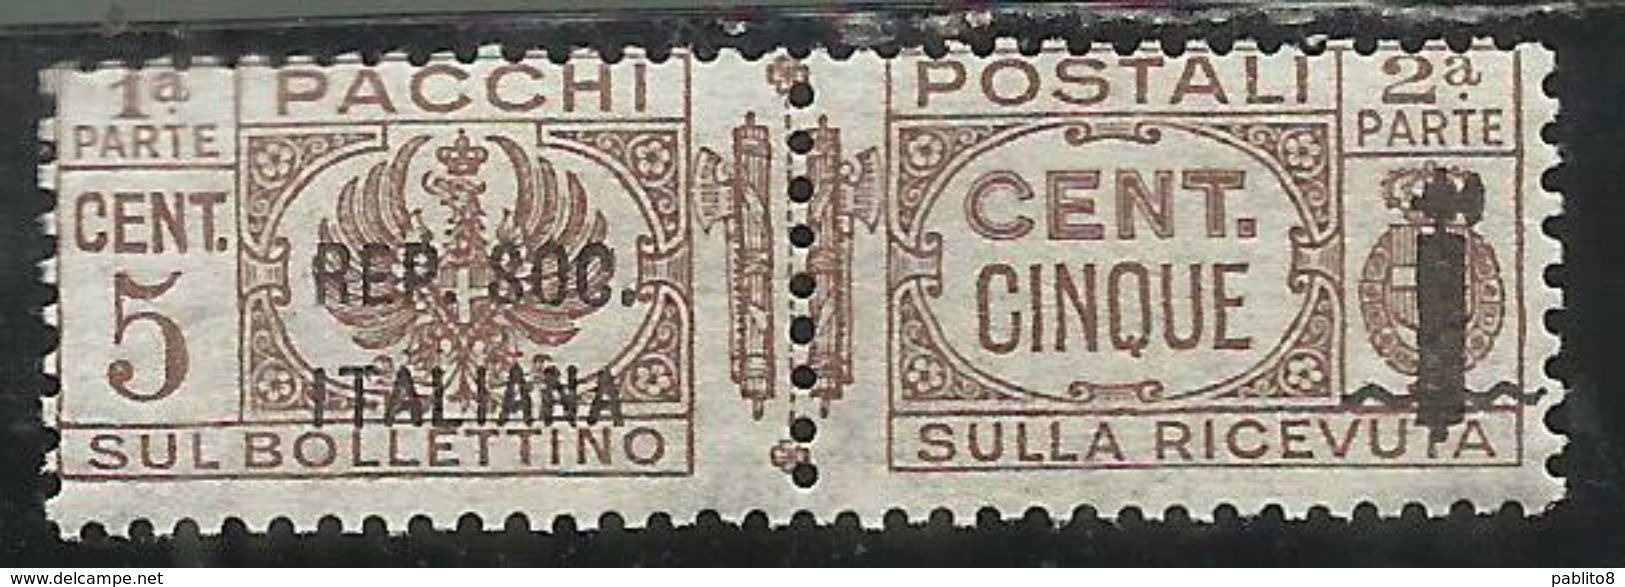 ITALIA REGNO ITALY KINGDOM 1944 RSI REPUBBLICA SOCIALE PACCHI FASCIETTO CENT. 5c MNH - Pacchi Postali